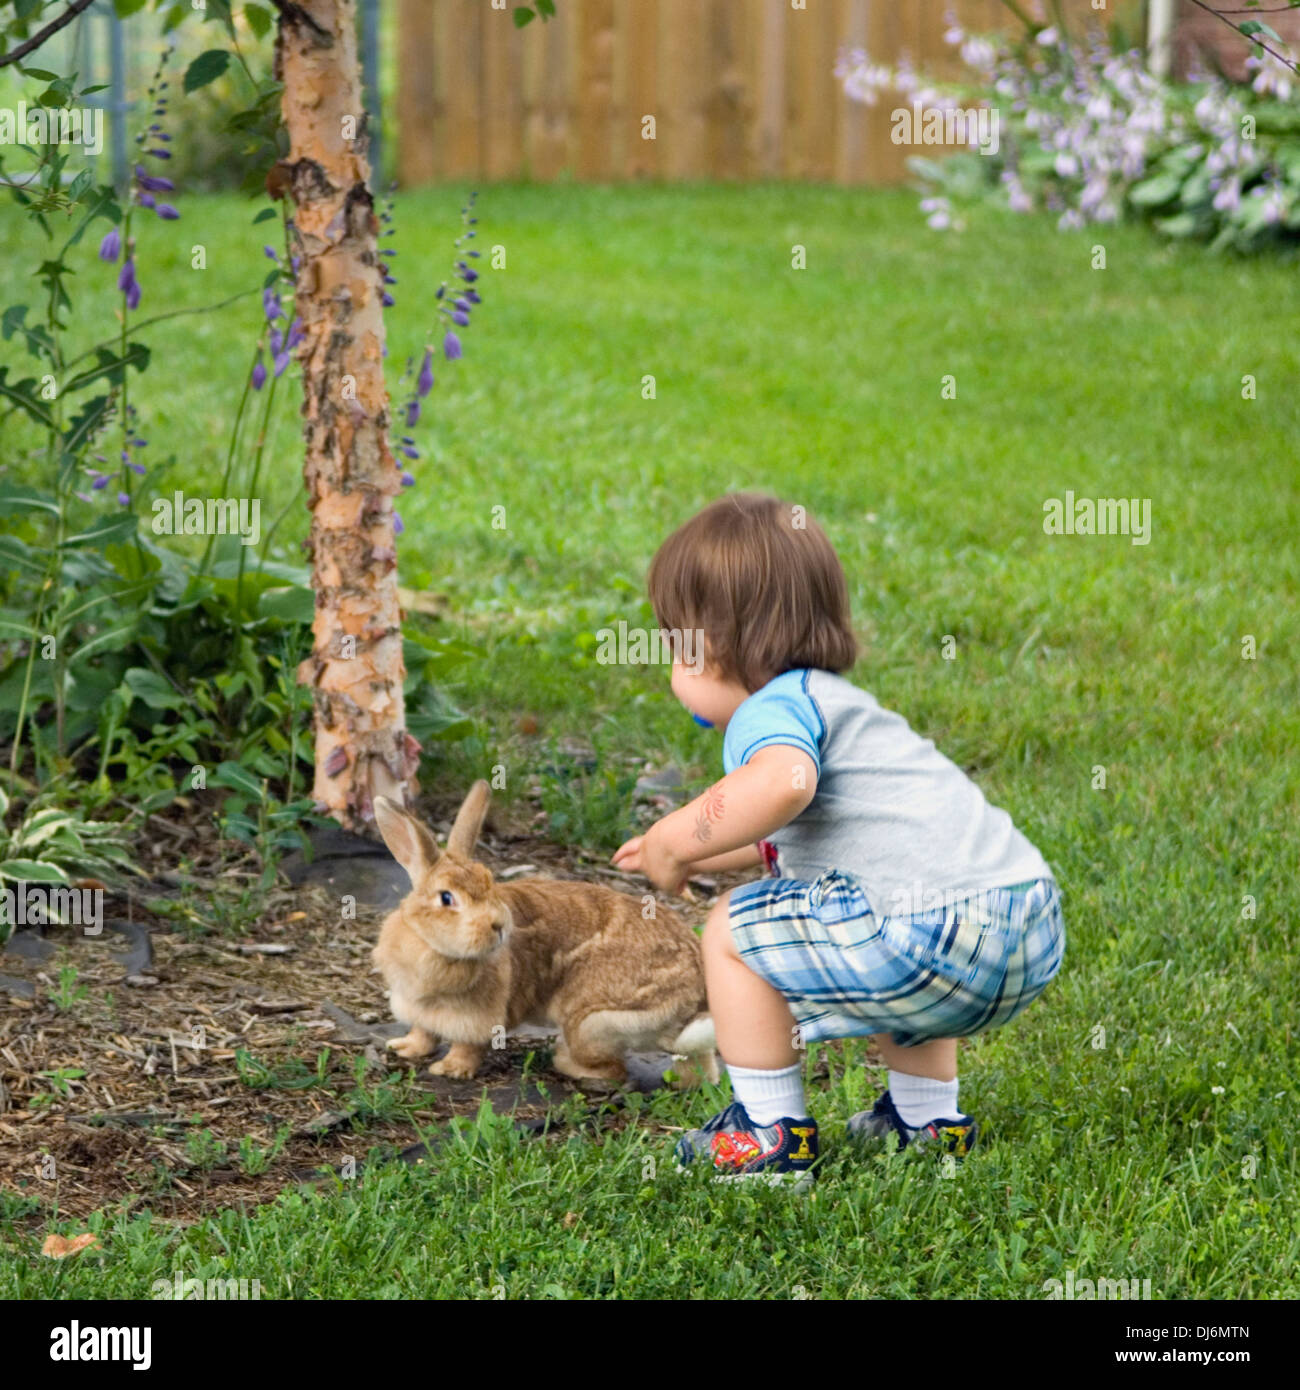 Toddler Petting Domestic Bunny in Suburban Yard Stock Photo